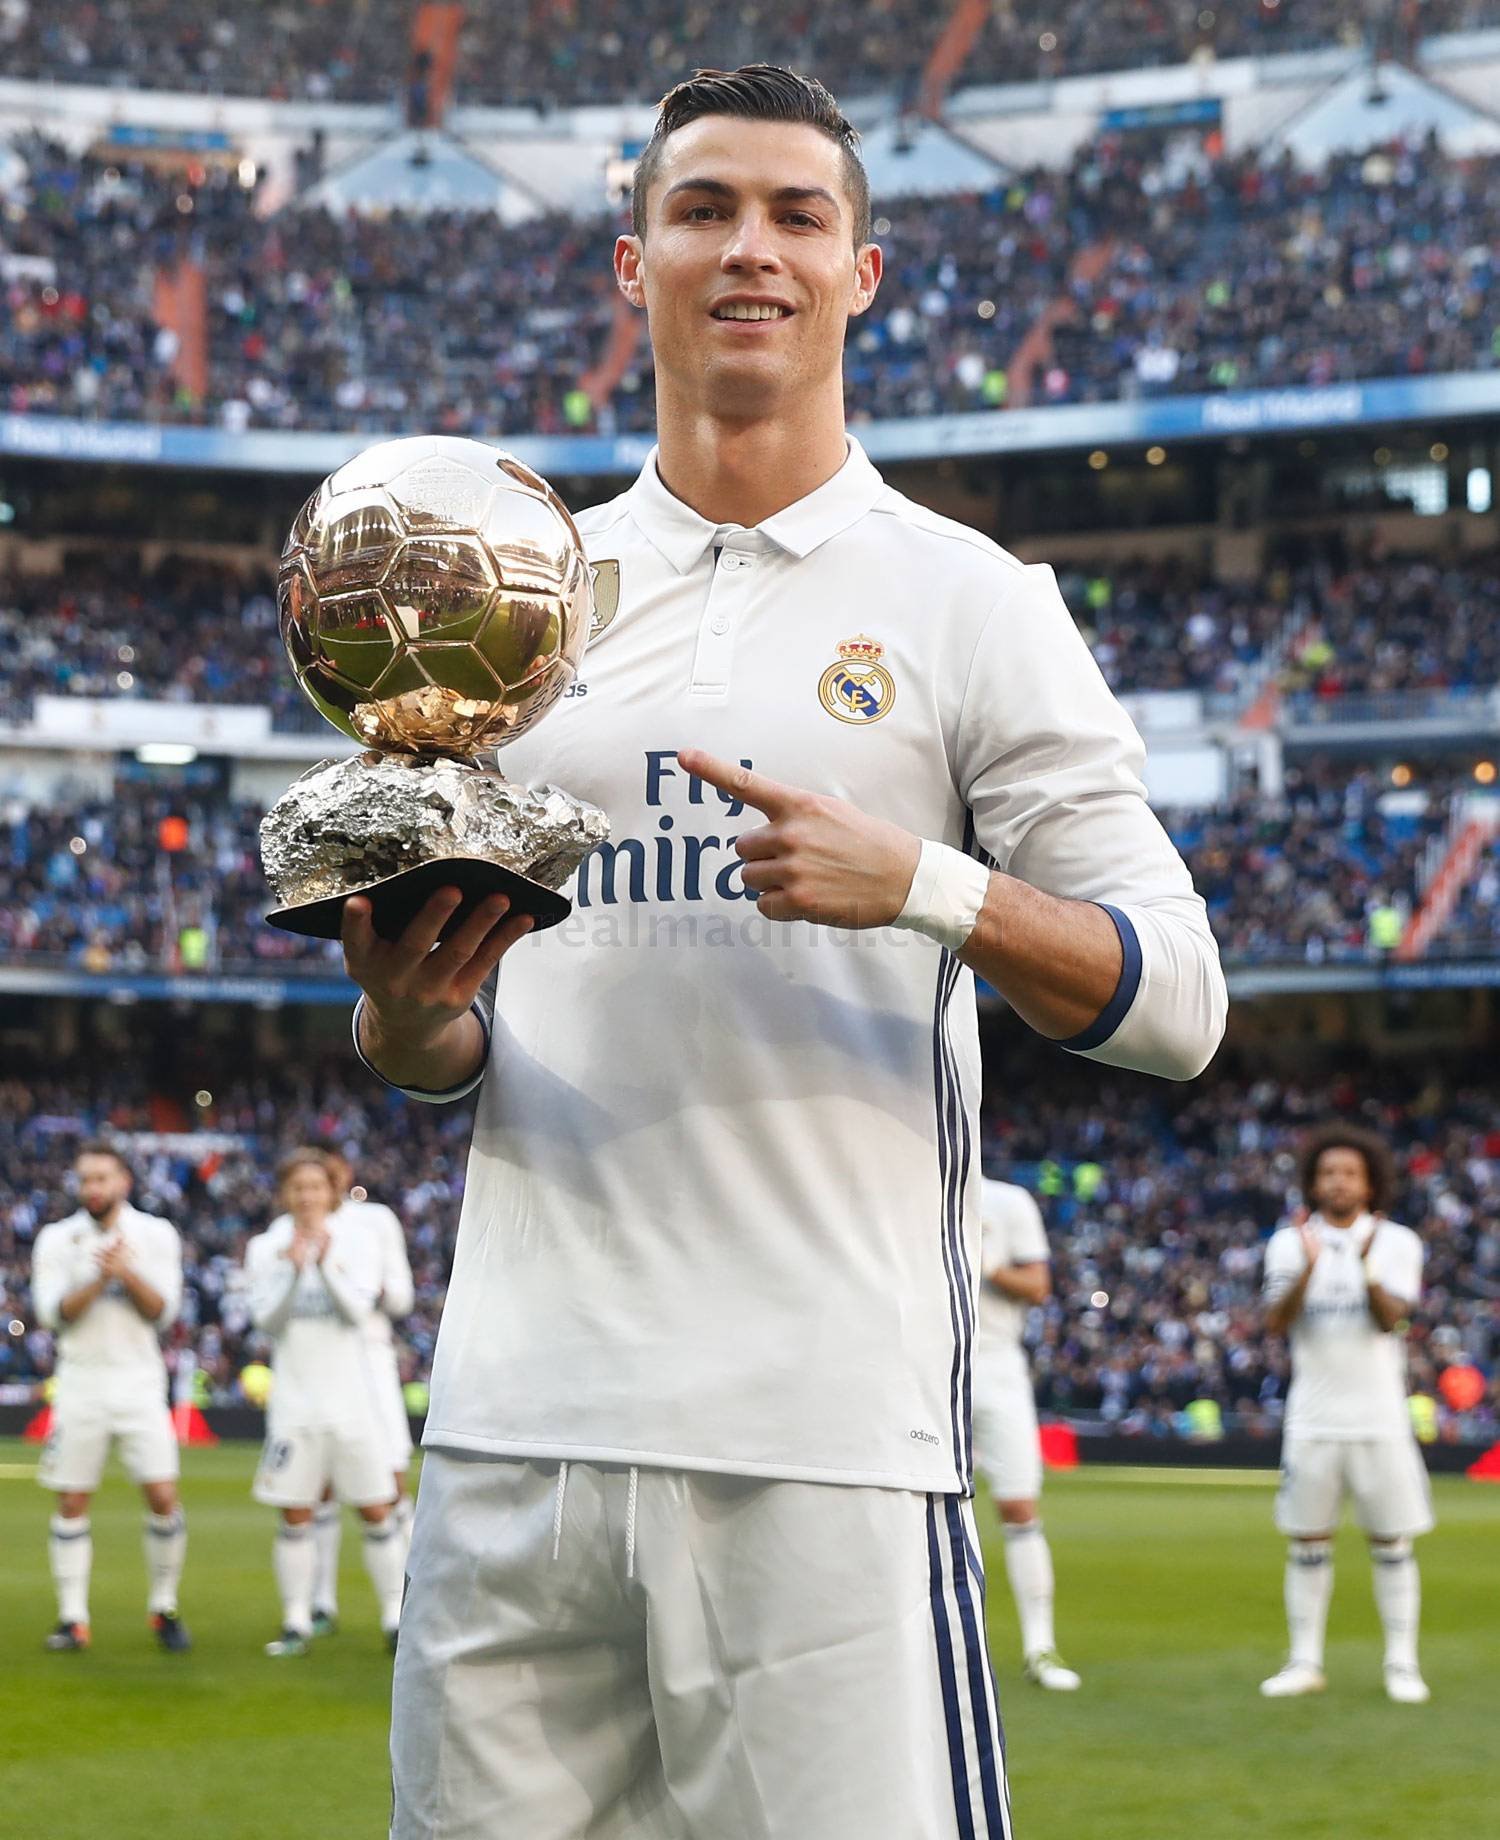 Роналдо в реале. Криштиану Роналду Реал Мадрид. Криштиану Роналду Реал Мадрид 2017. Кристиано Роналдо Реал Мадрид. Cristiano Ronaldo Реал Мадрид.